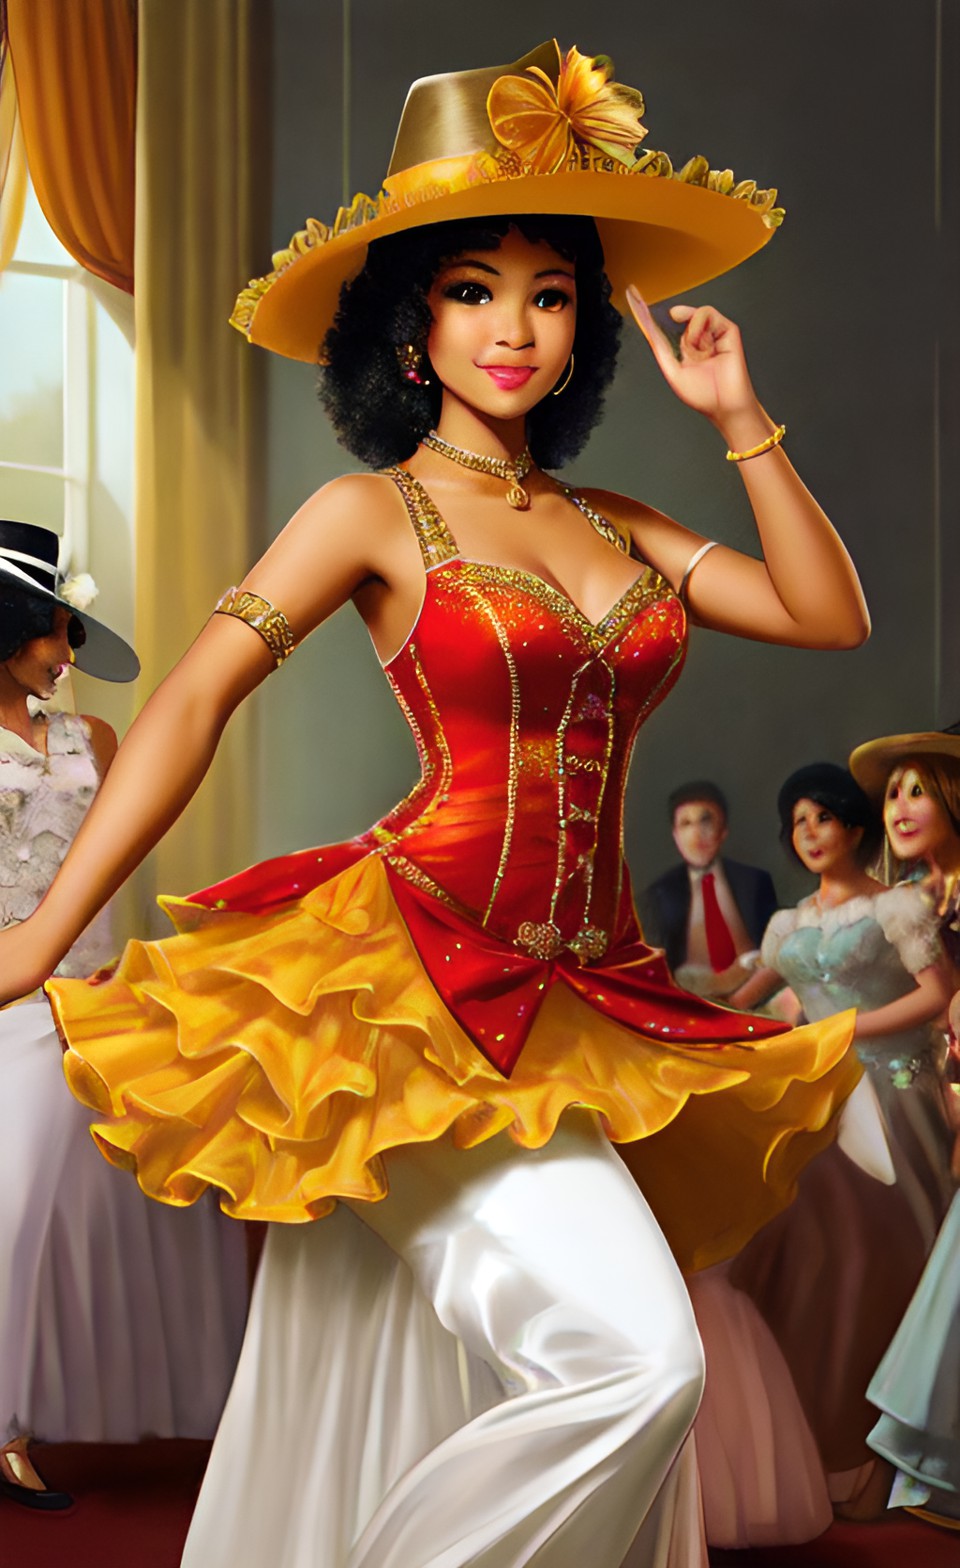 Mixed-race women in fine Shakespearean era party dresses Mixra237